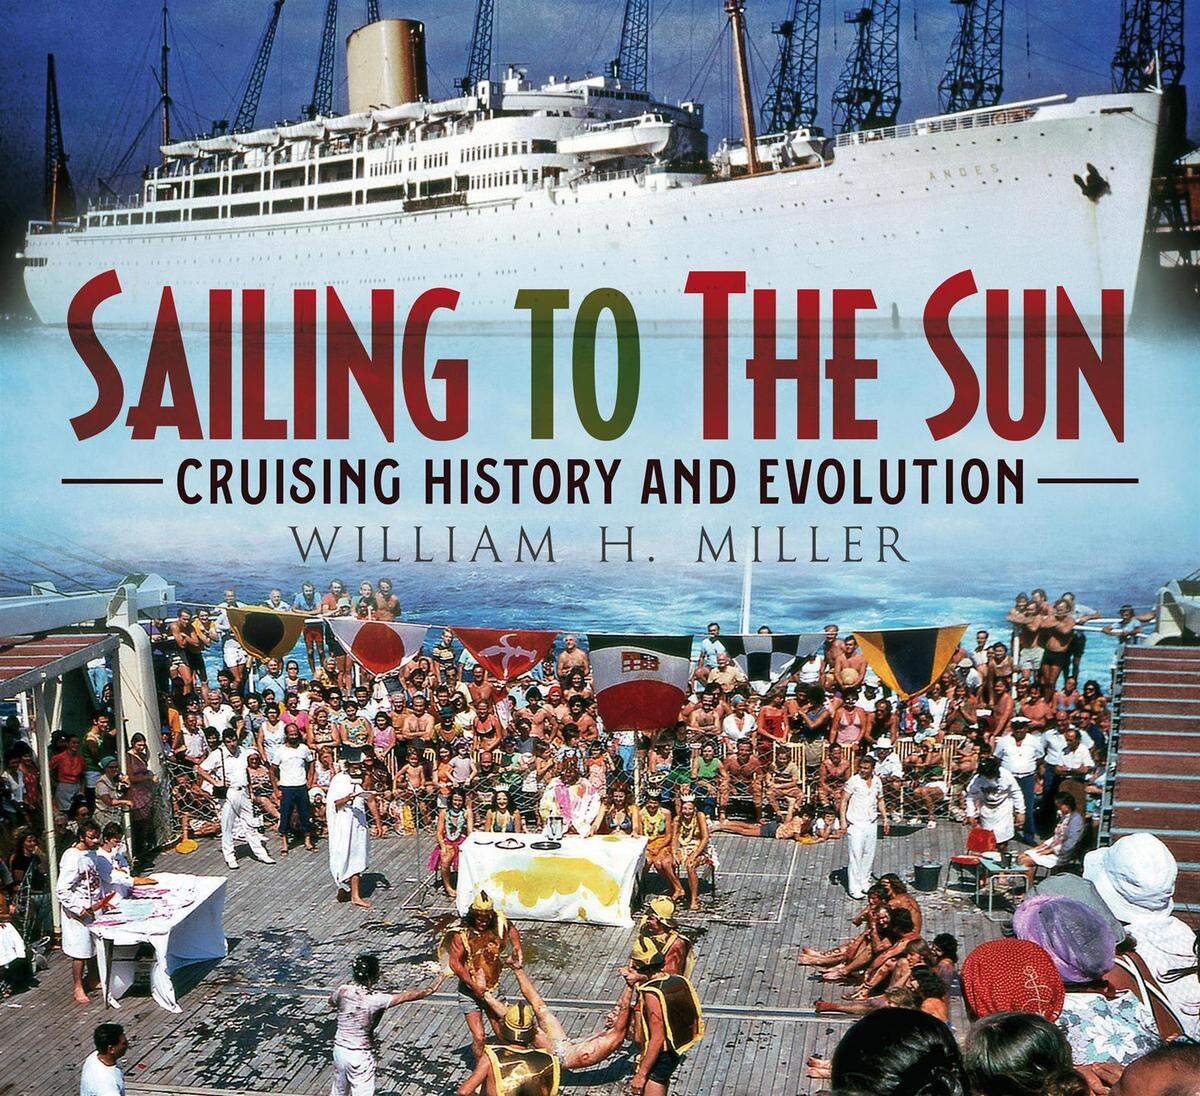 Sailing to the Sun, Cruising History and Evolution von William H. Miller ist im Fonthill-Verlag erschienen.